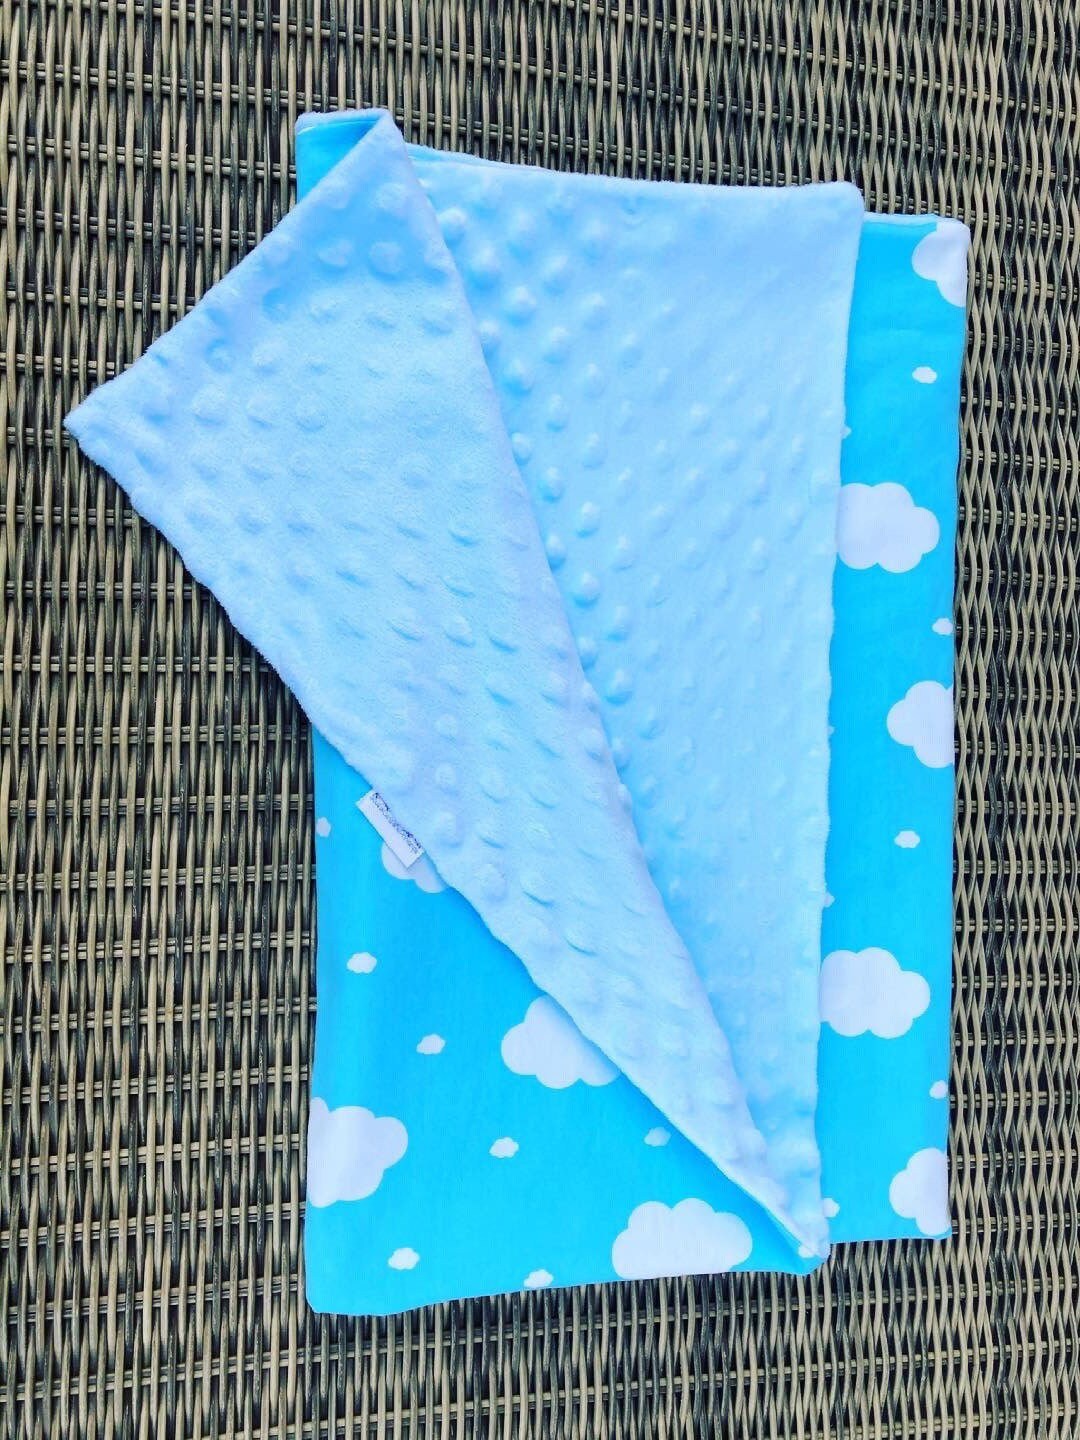 Couverture Légère Bébé en Tissu Coton Bleu Ciel Nuages et Minky Ciel